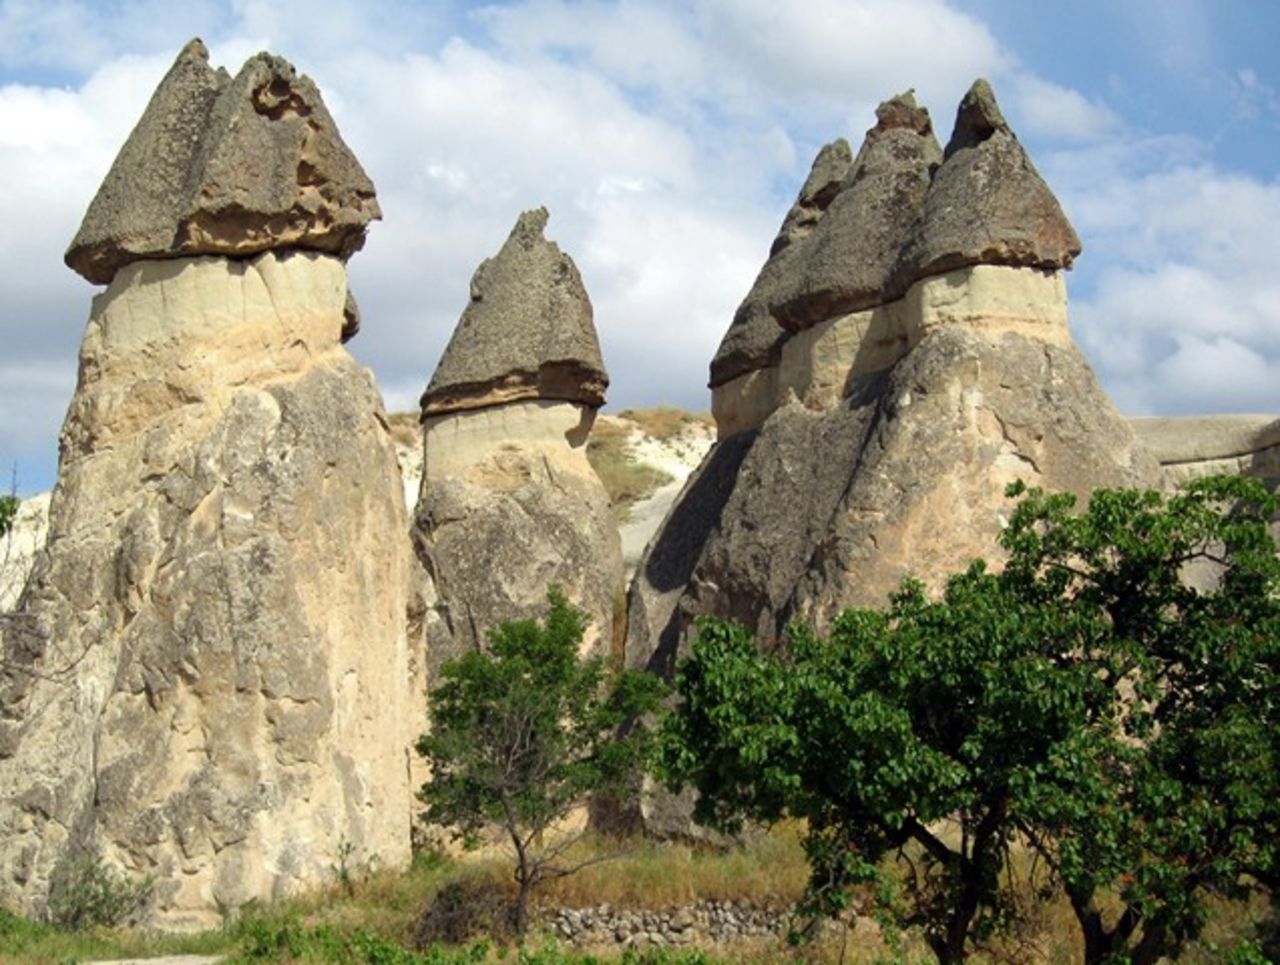 Ésta remota área de la región central de Turquía está cubierta de increíbles "chimeneas de hadas", picos volcánicos a través de los cuales es posible caminar y explorar las cuevas de una ciudad subterránea, o de recorrer el área desde arriba en un globo aerostático o helicóptero.